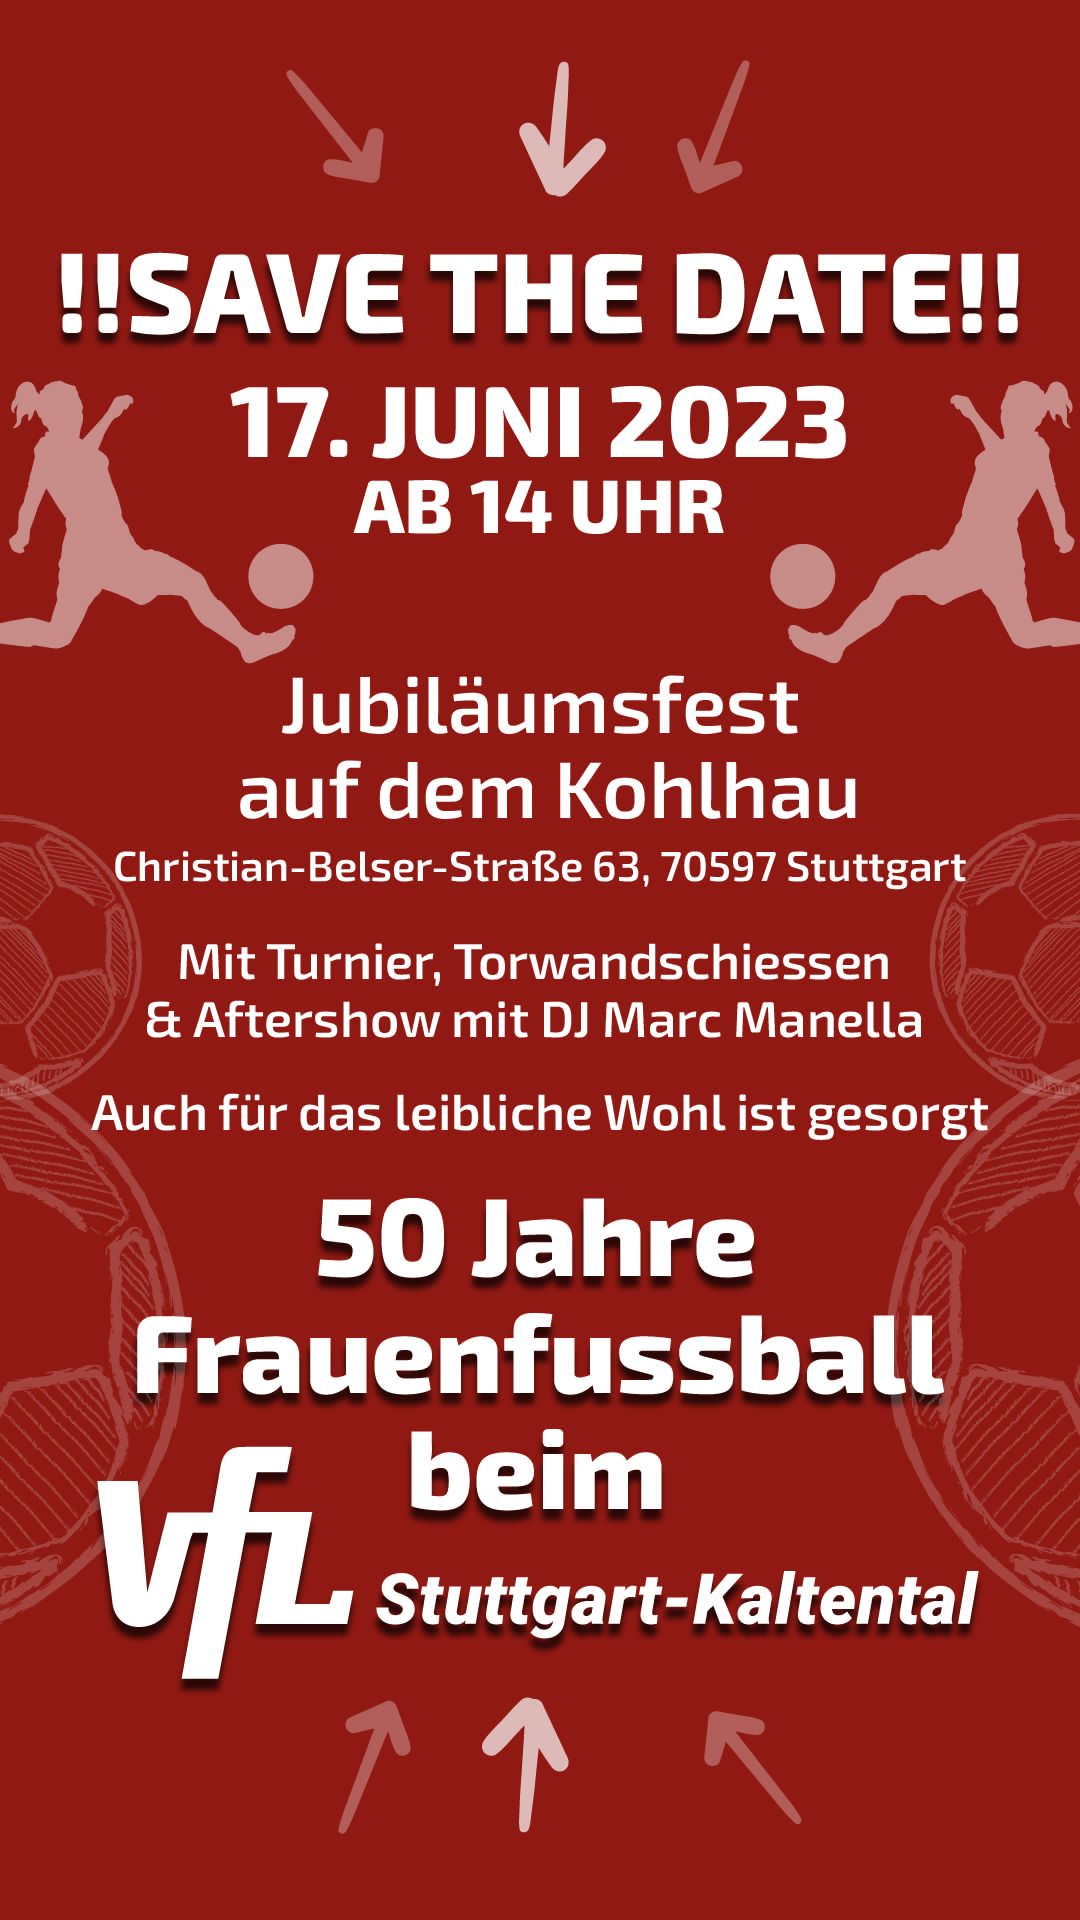 Save the date: 17.06.2023. Jubiläumsfest aid dem Kohlhau. 50 Jahre Frauenfussball beim VfL Kaltental.